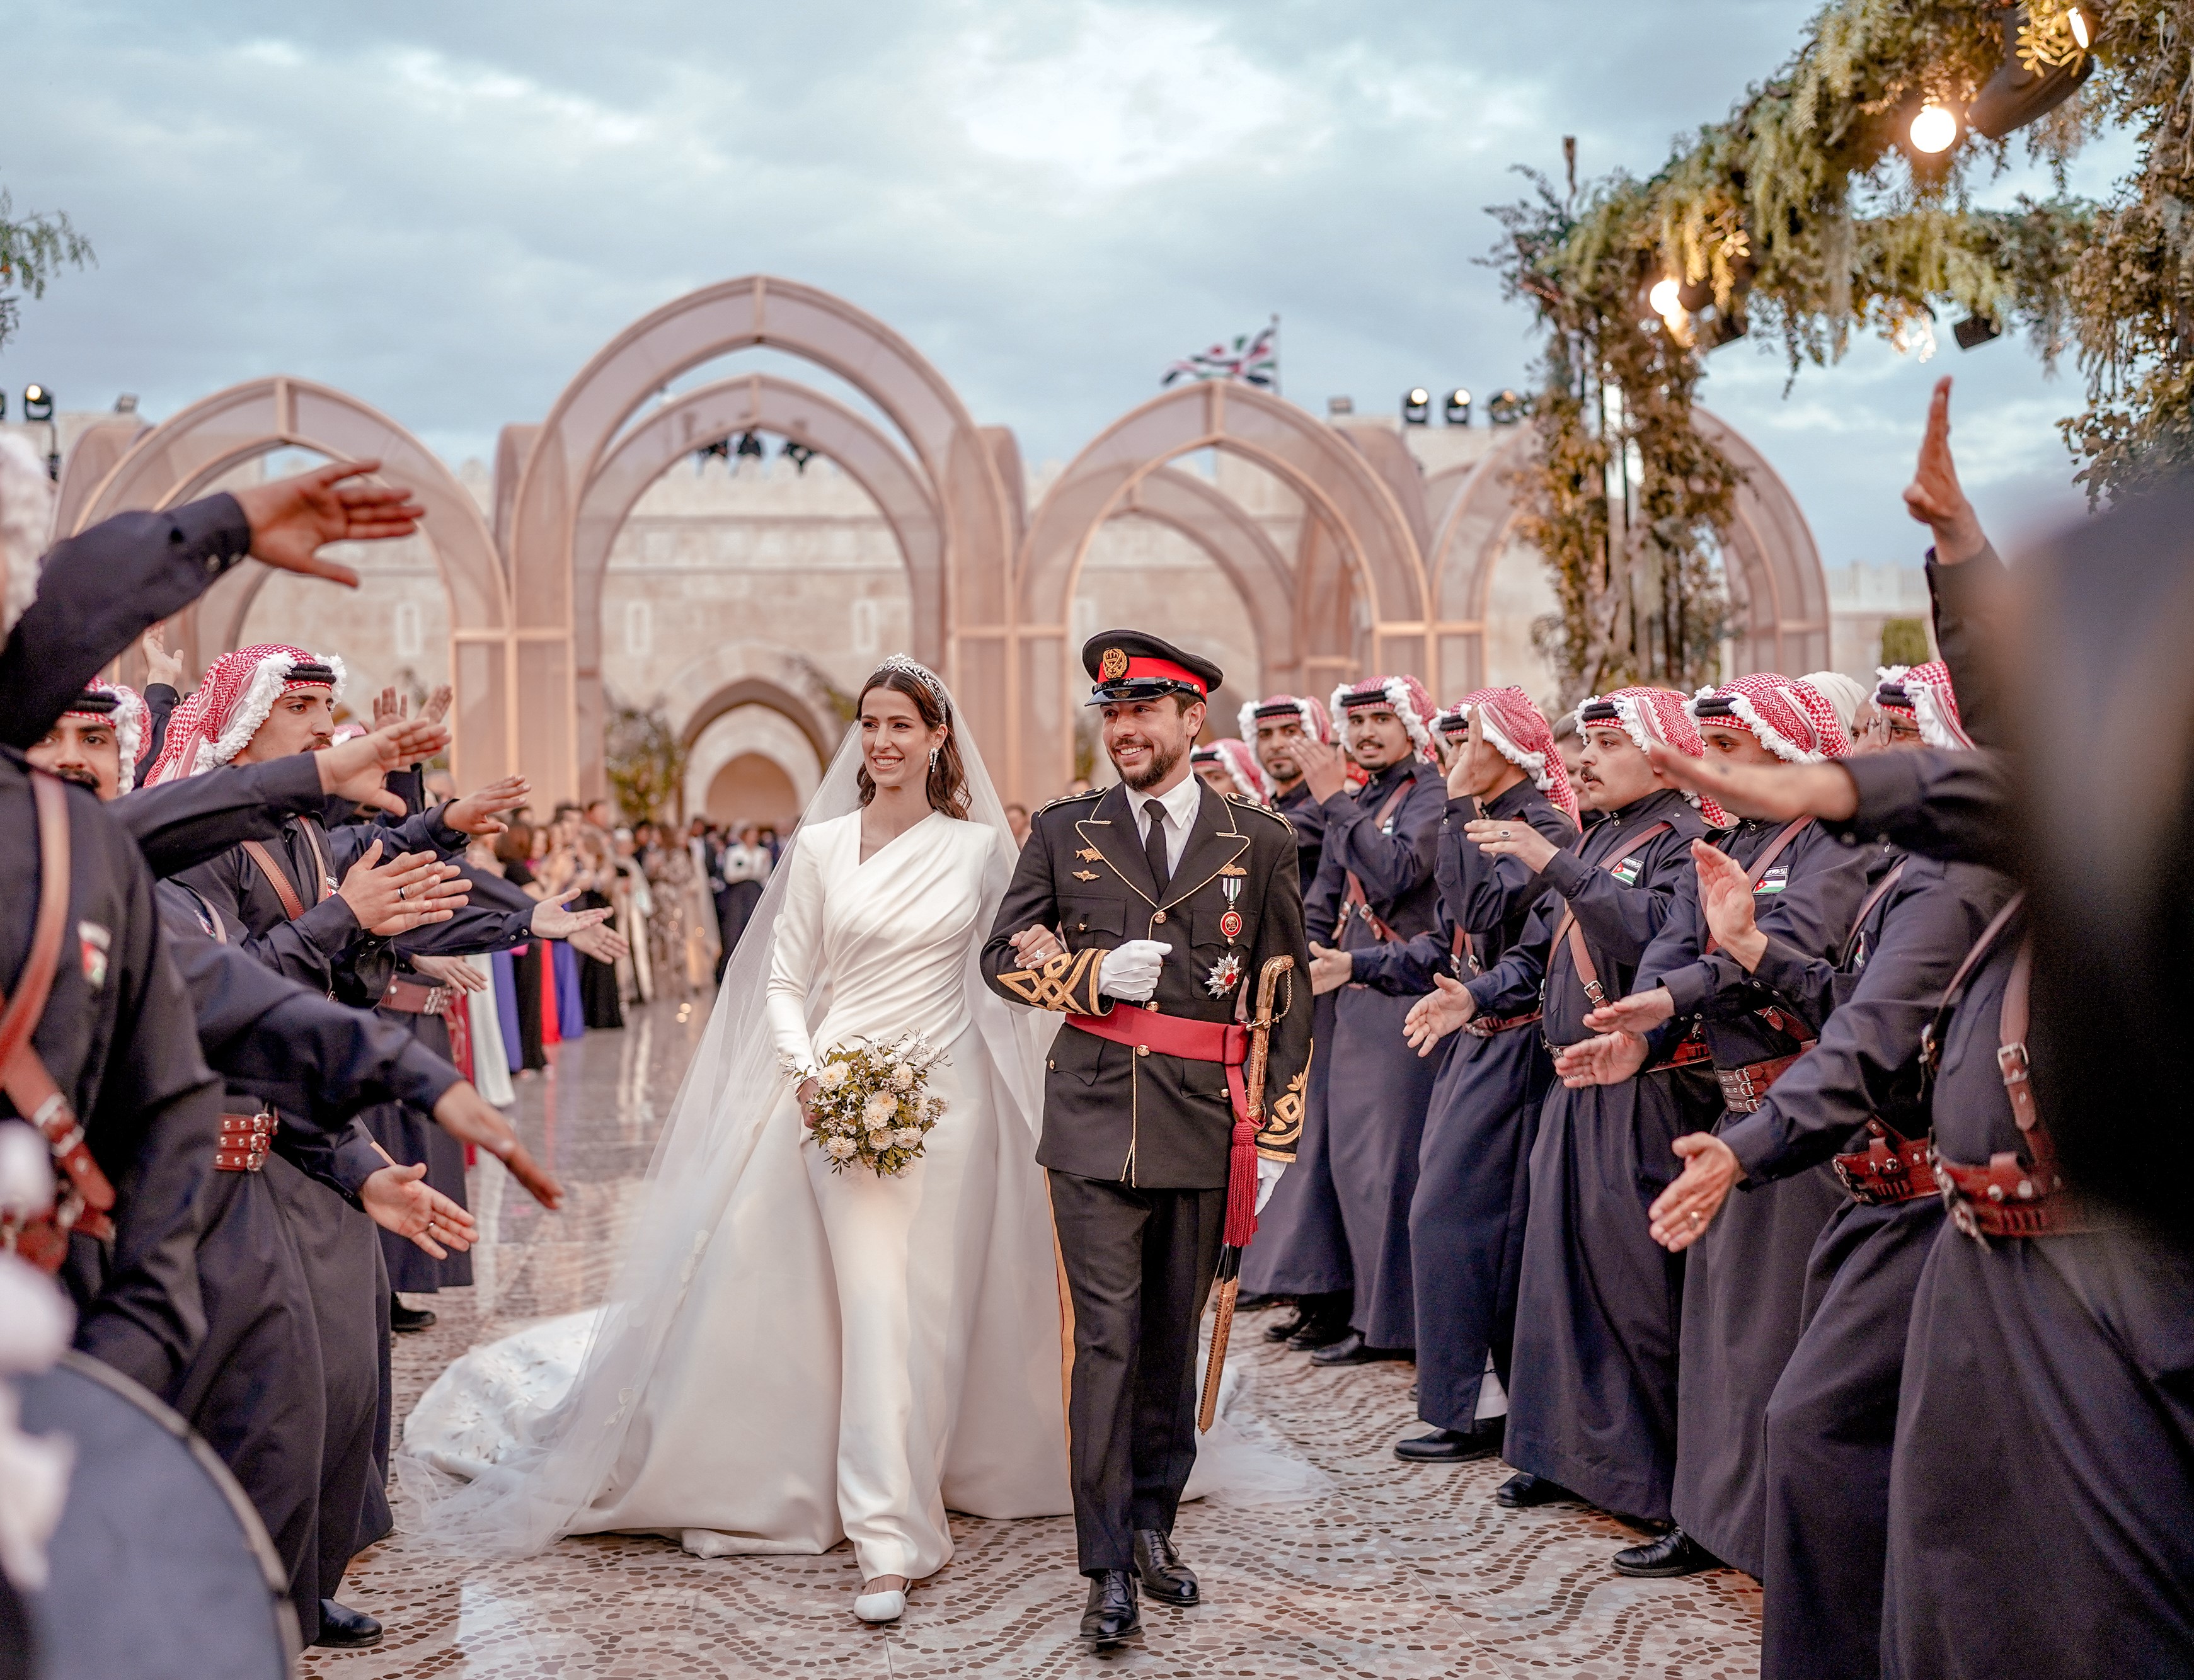 Аль бин аль хусейн. Принцесса Иордании Рания. Свадьба наследного принца Иордании Хусейна. Королева Иордании Рания свадьба. Принцесса Раджва Аль Саиф.